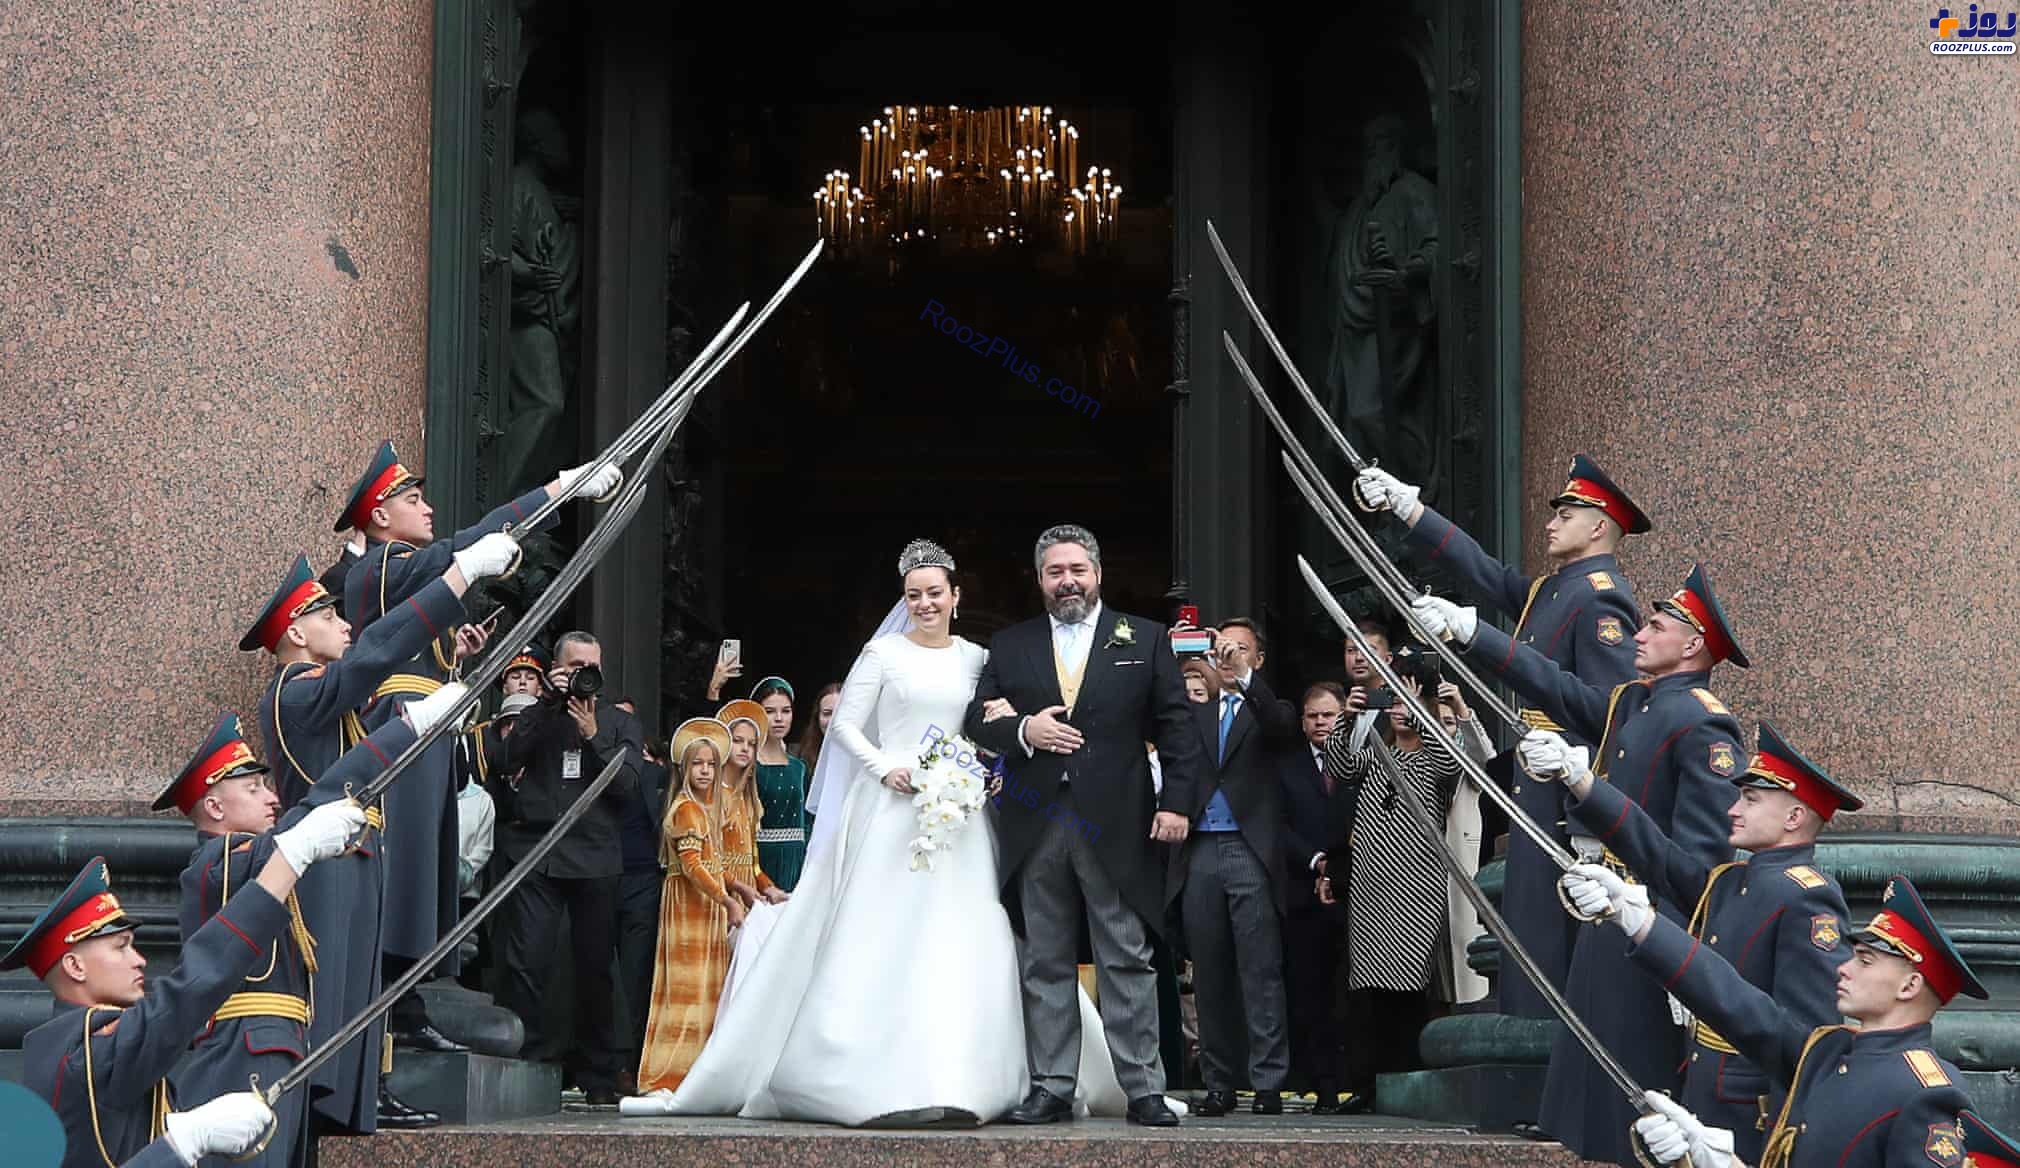 عکس/اولین ازدواج سلطنتی قرن اخیر در روسیه پس از انقلاب کمونیستی